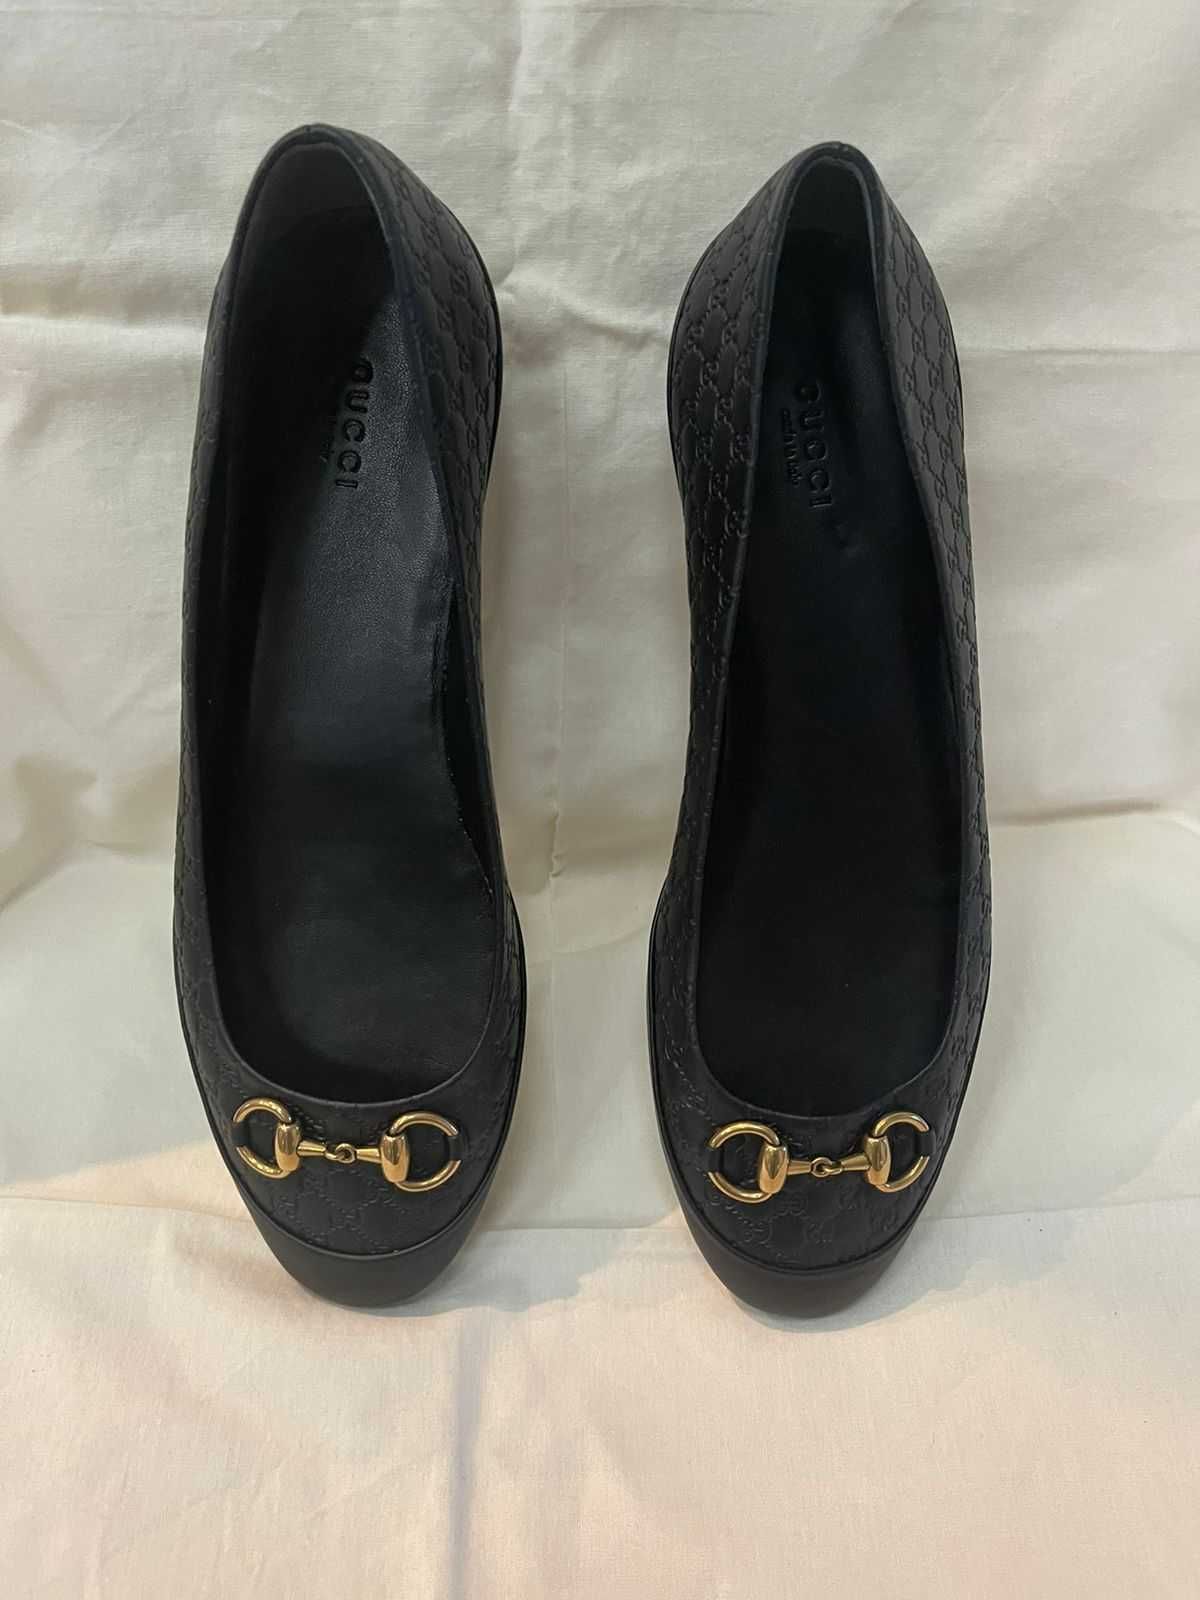 Кожаные балетки Gucci с черной монограммой знака и золотая пряжка.